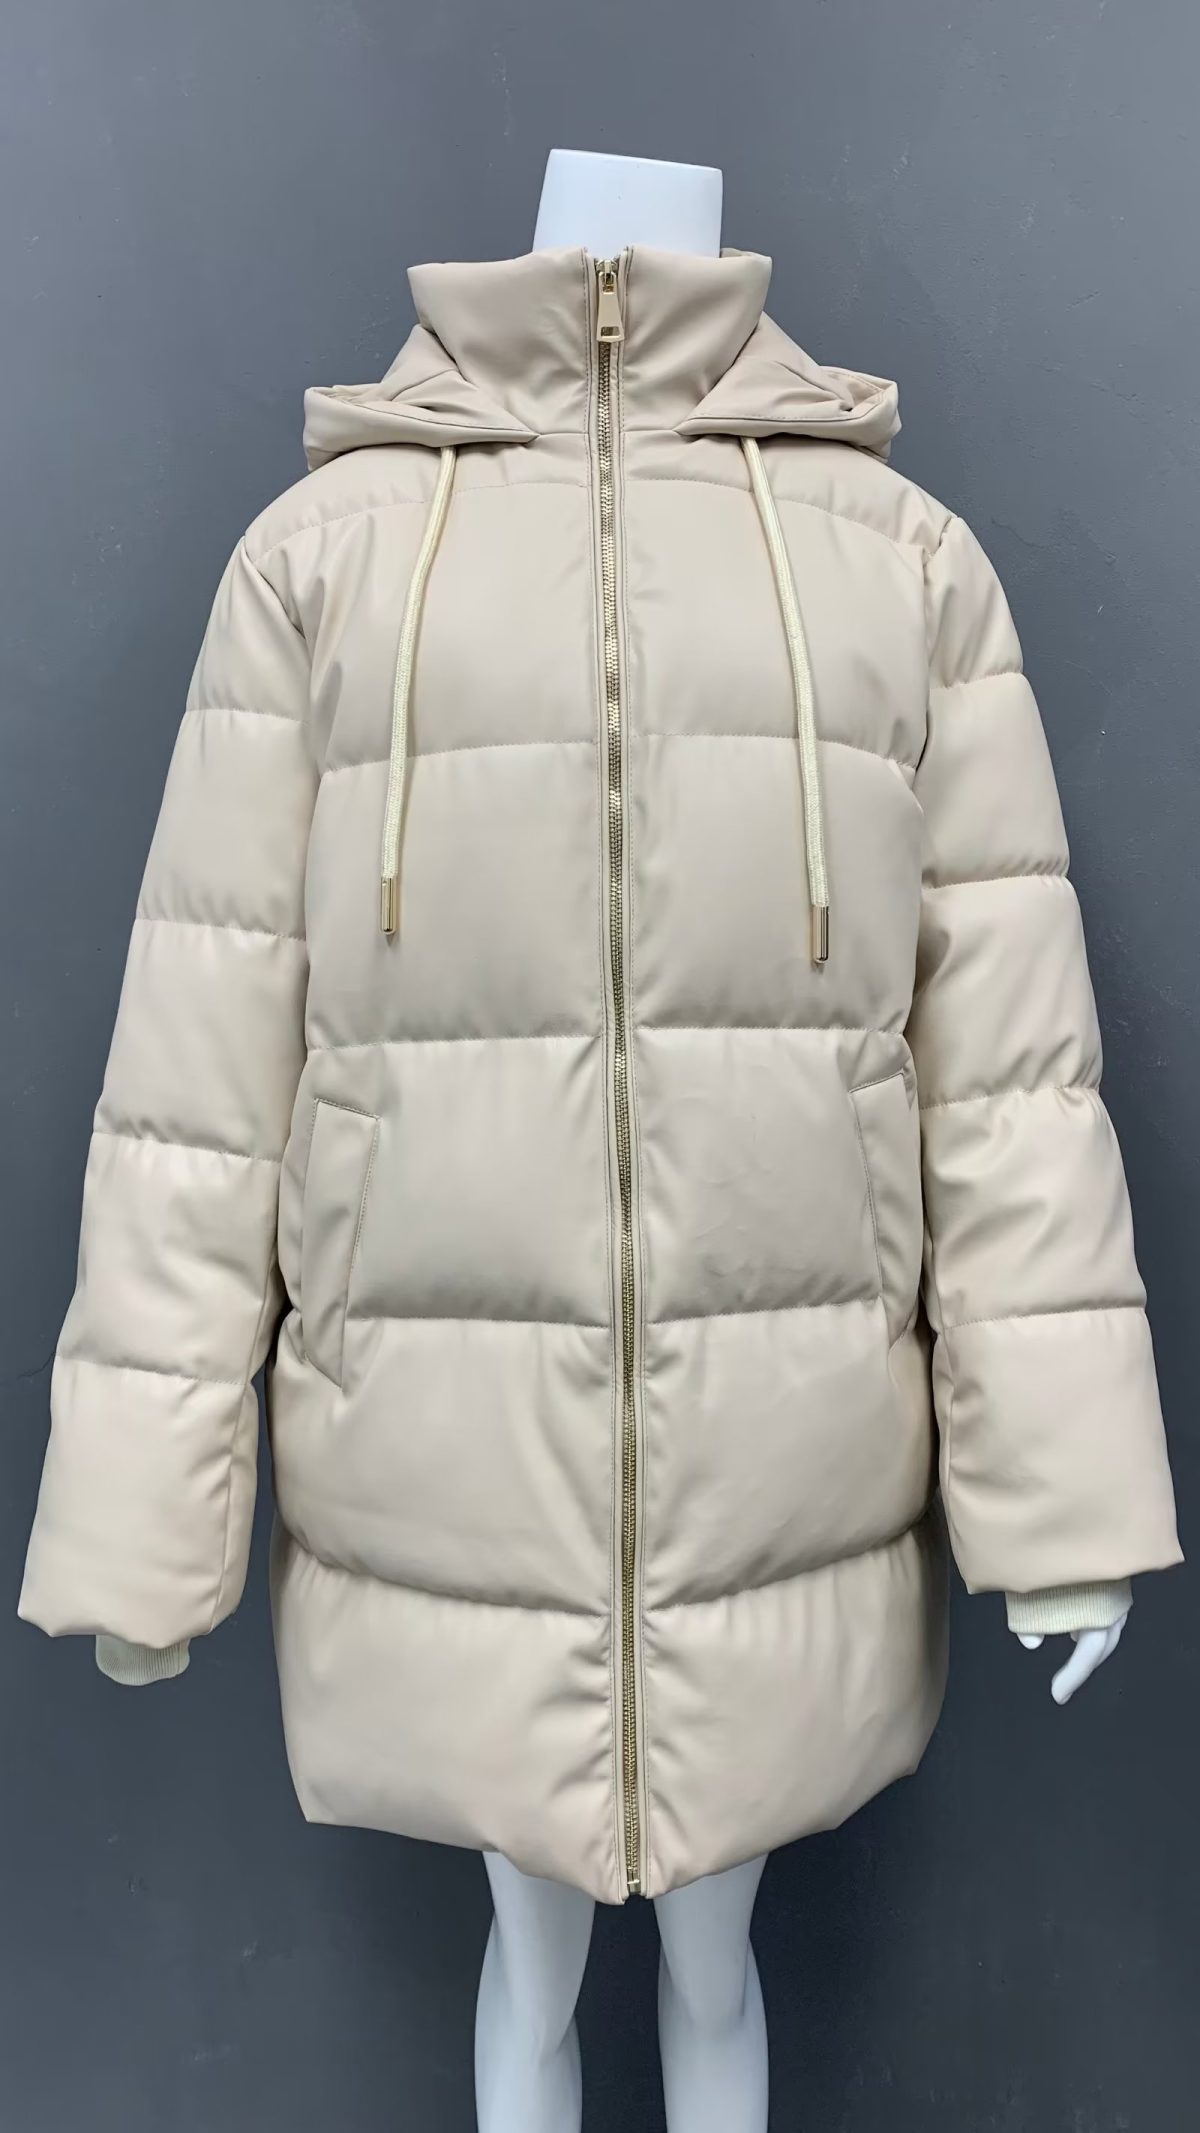 Autumn Winter Cotton Coat - Coats & Jackets - Uniqistic.com